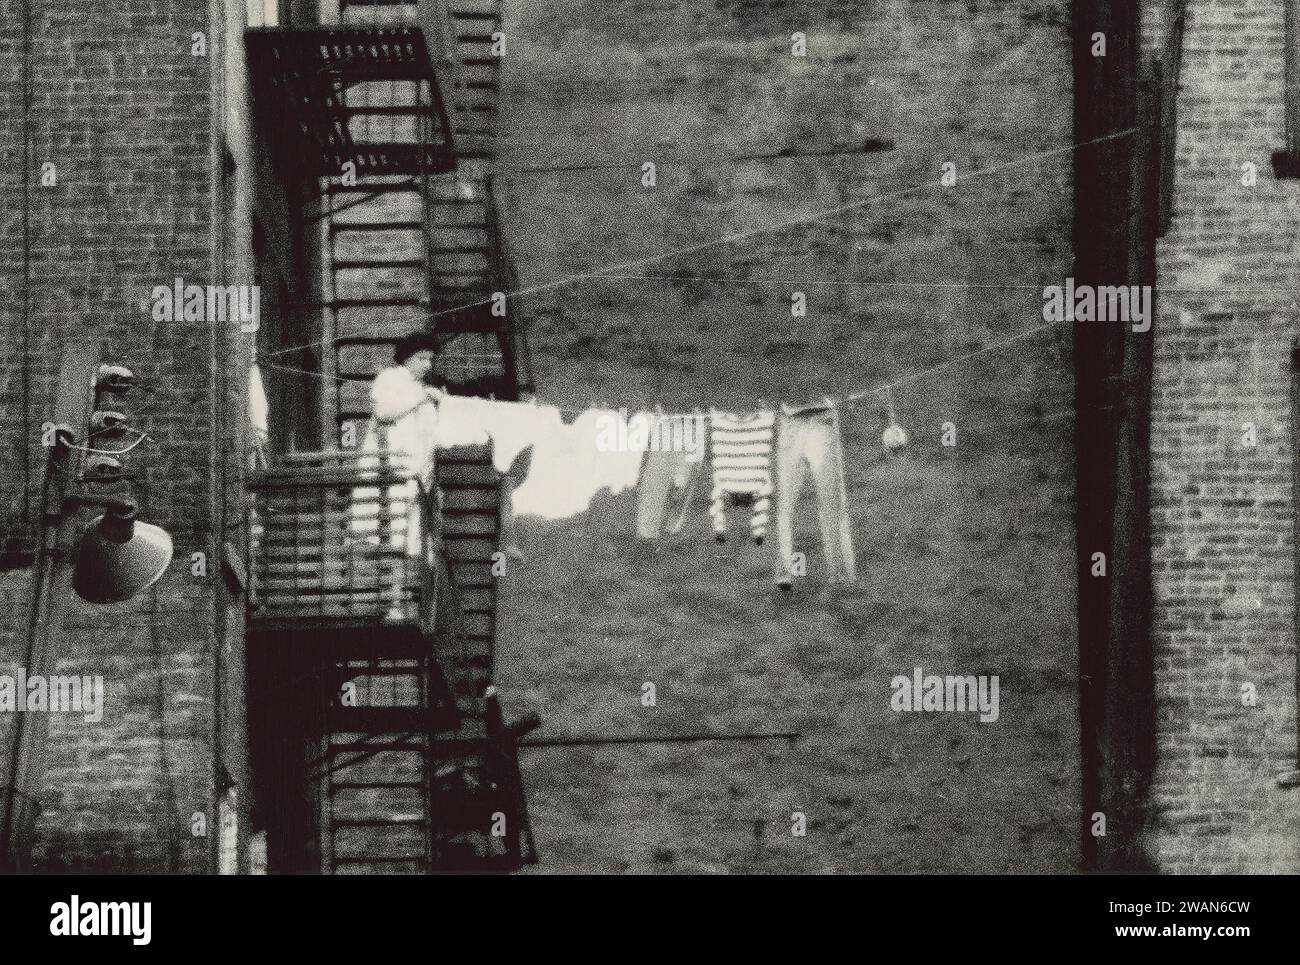 Donna in piedi su una scala antincendio appendere abiti da asciugare sulla linea di abbigliamento che corre verso l'edificio vicino, New York City, New York, USA, Angelo Rizzuto, Anthony Angel Collection, novembre 1956 Foto Stock